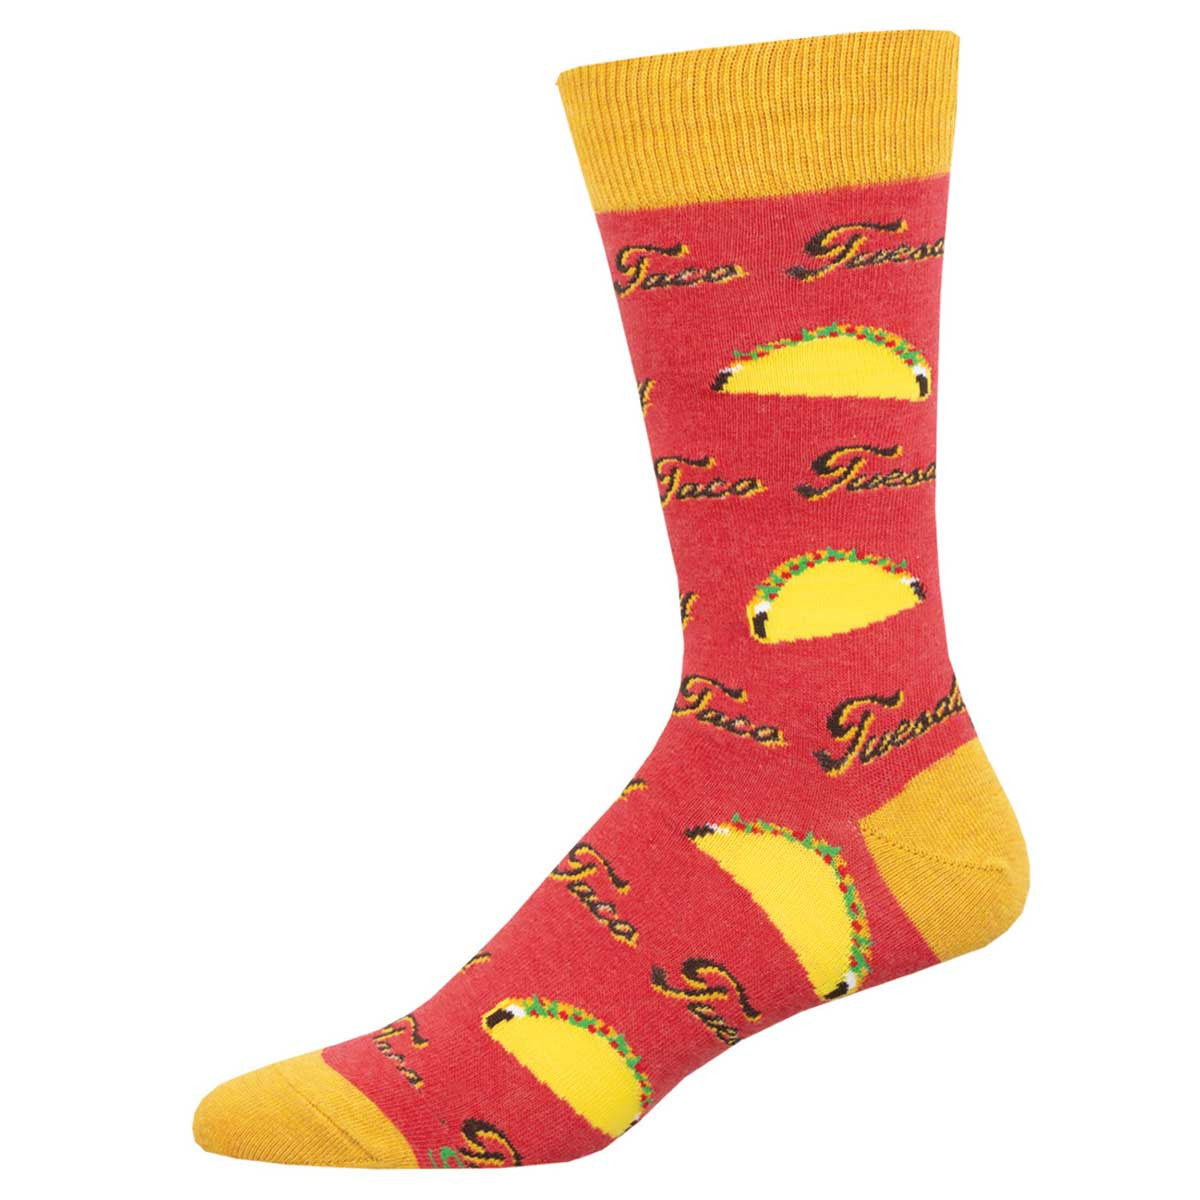 Taco Tuesday Men's Socks